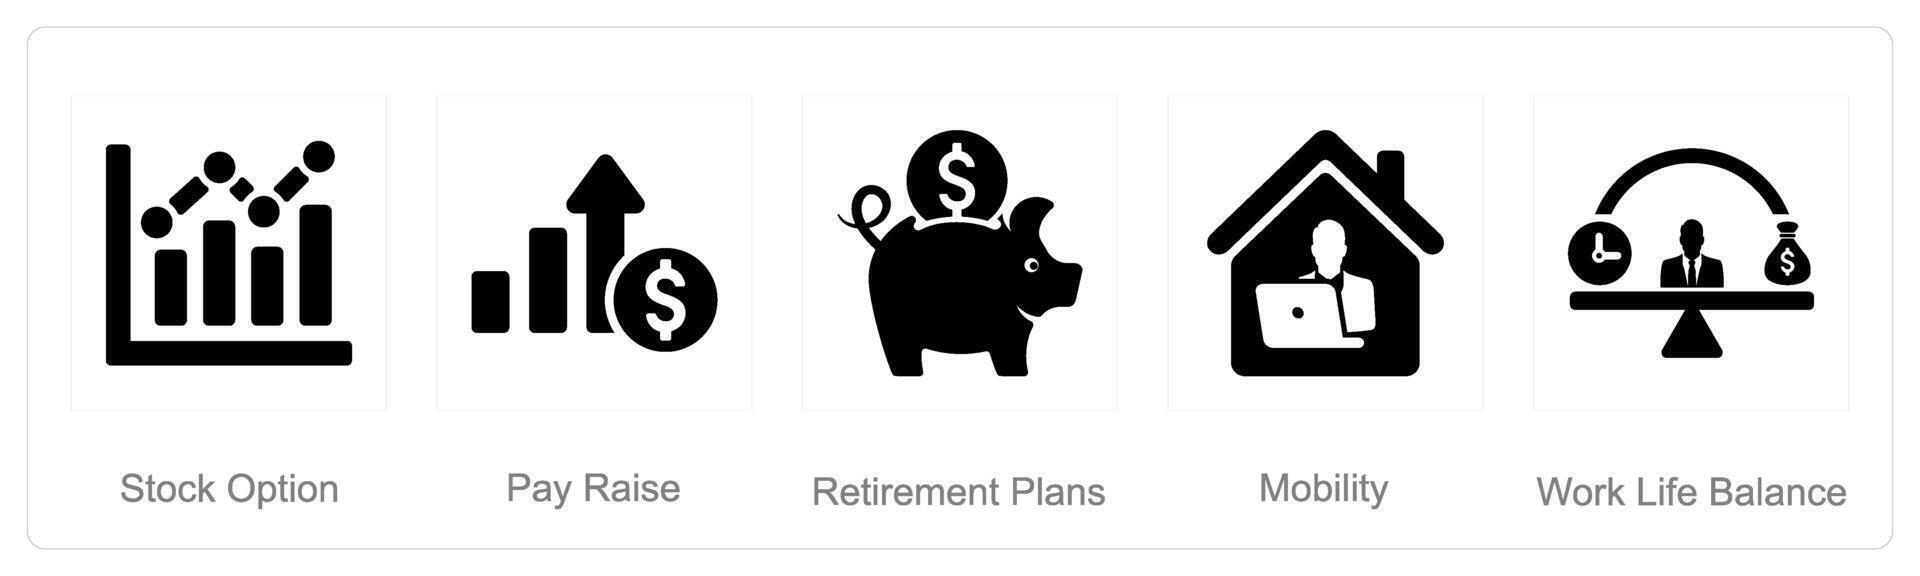 en uppsättning av 5 anställd fördelar ikoner som stock alternativ, betala höja, pensionering planer vektor